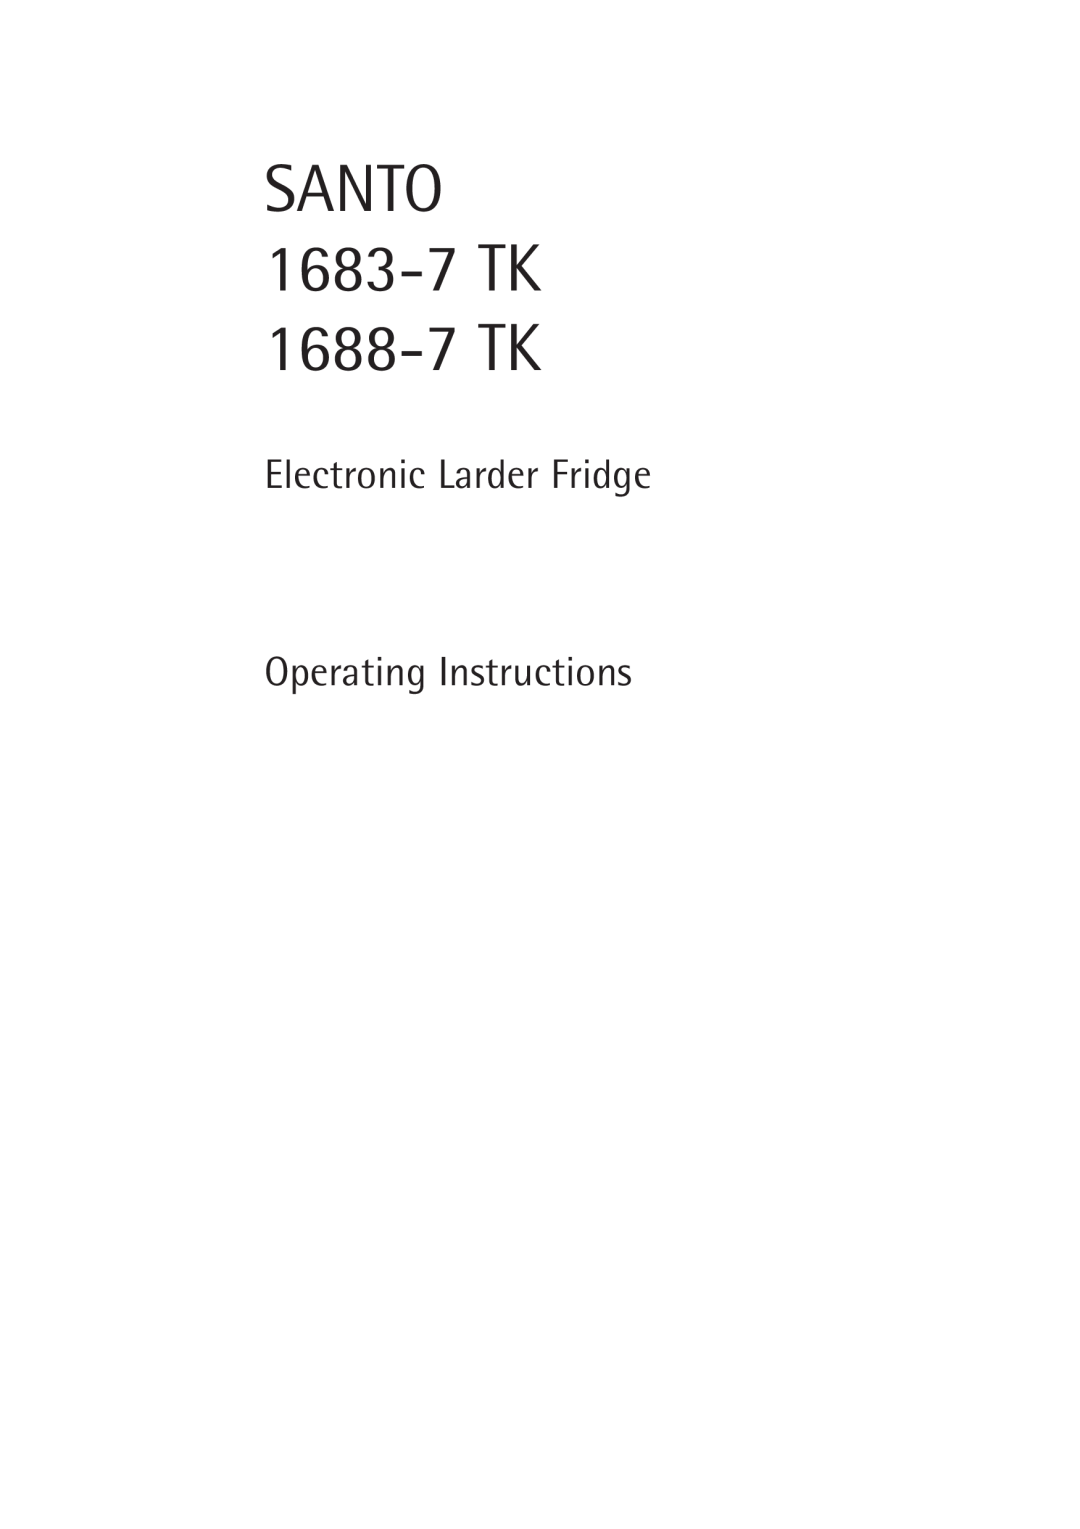 Electrolux manual SANTO 1683-7 TK 1688-7 TK, Electronic Larder Fridge Operating Instructions 